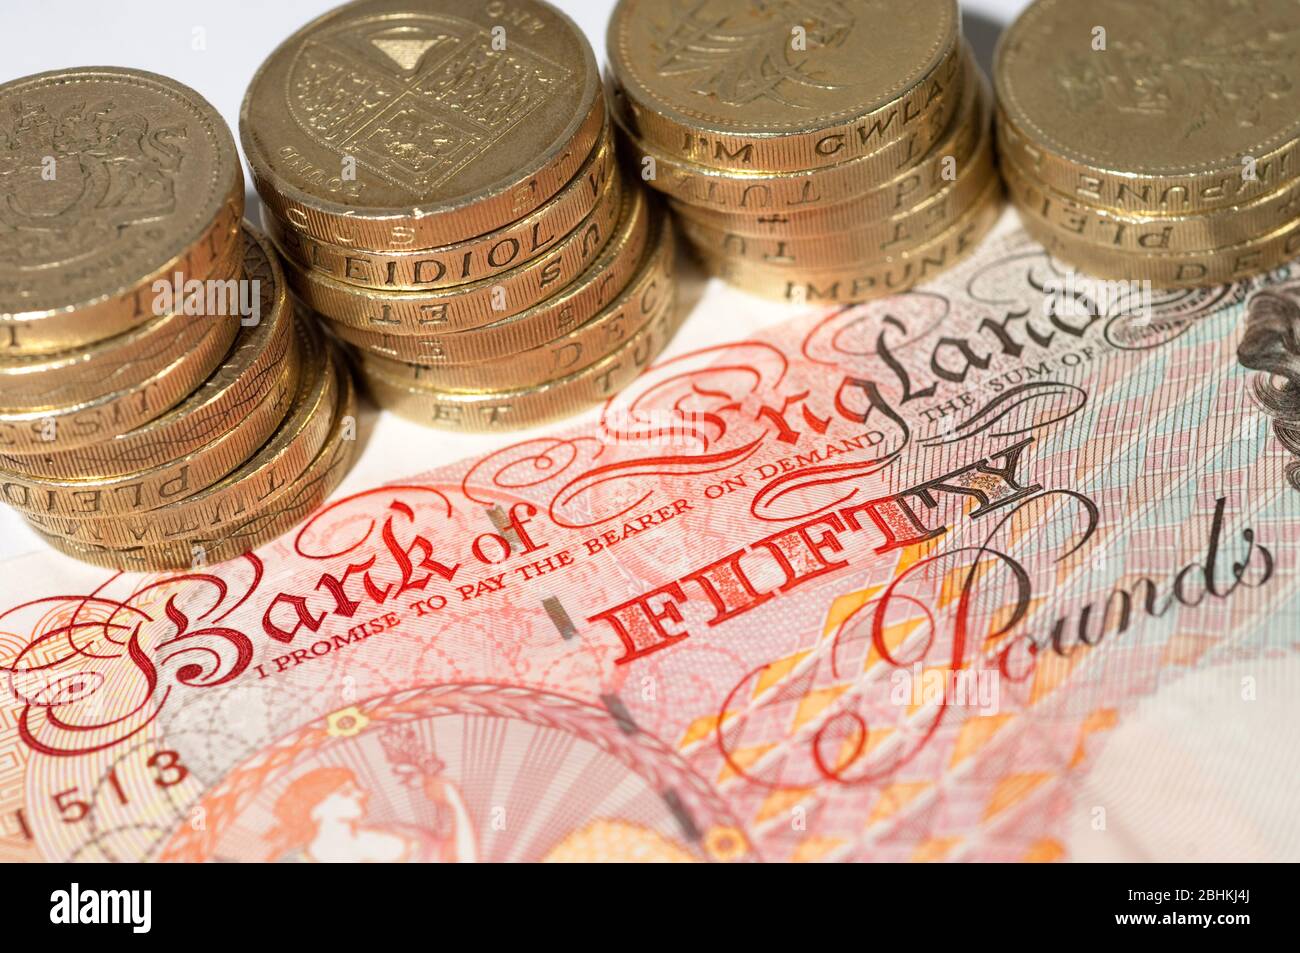 Imagen ilustrativa de una nota de £50 libras y pilas de monedas. Foto de stock